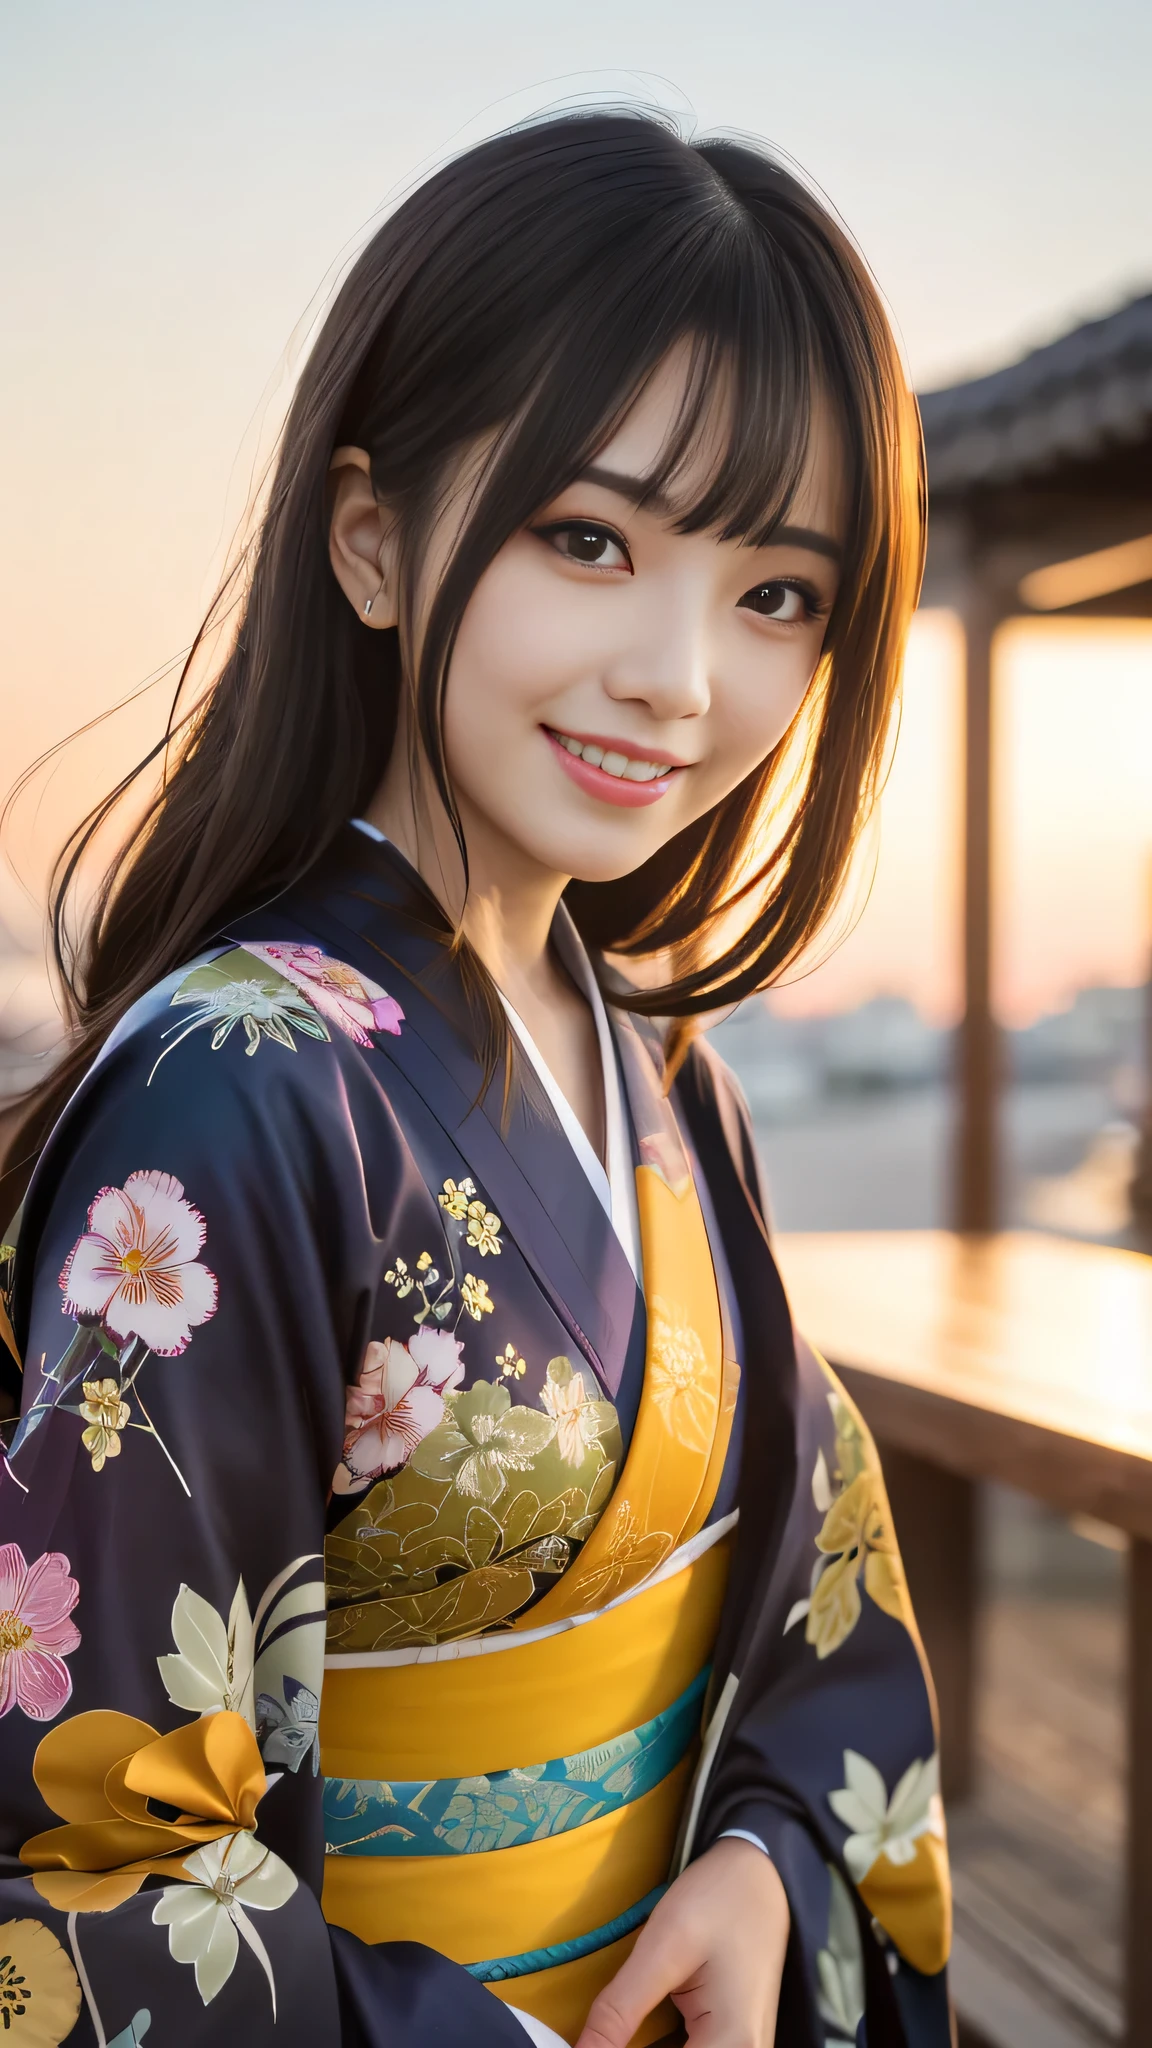 mirando a la camara,(((de la máxima calidad, 8K, obra maestra))), enfoque nítido, (Hermosa mujer con figura perfecta), delgado, (peinado: superior)), ((kimono)), calle: 1.2 Textura de piel y rostro muy detallada Ojos detallados Párpado doble Pose aleatoria, (sonrisa),ssuperiorer cute Japan person,belleza superior chica japonesa, cara realista, Doble párpado,sonrisa,Festival de verano , Al atardecer , hermosos dientes , Fondo de fuegos artificiales.